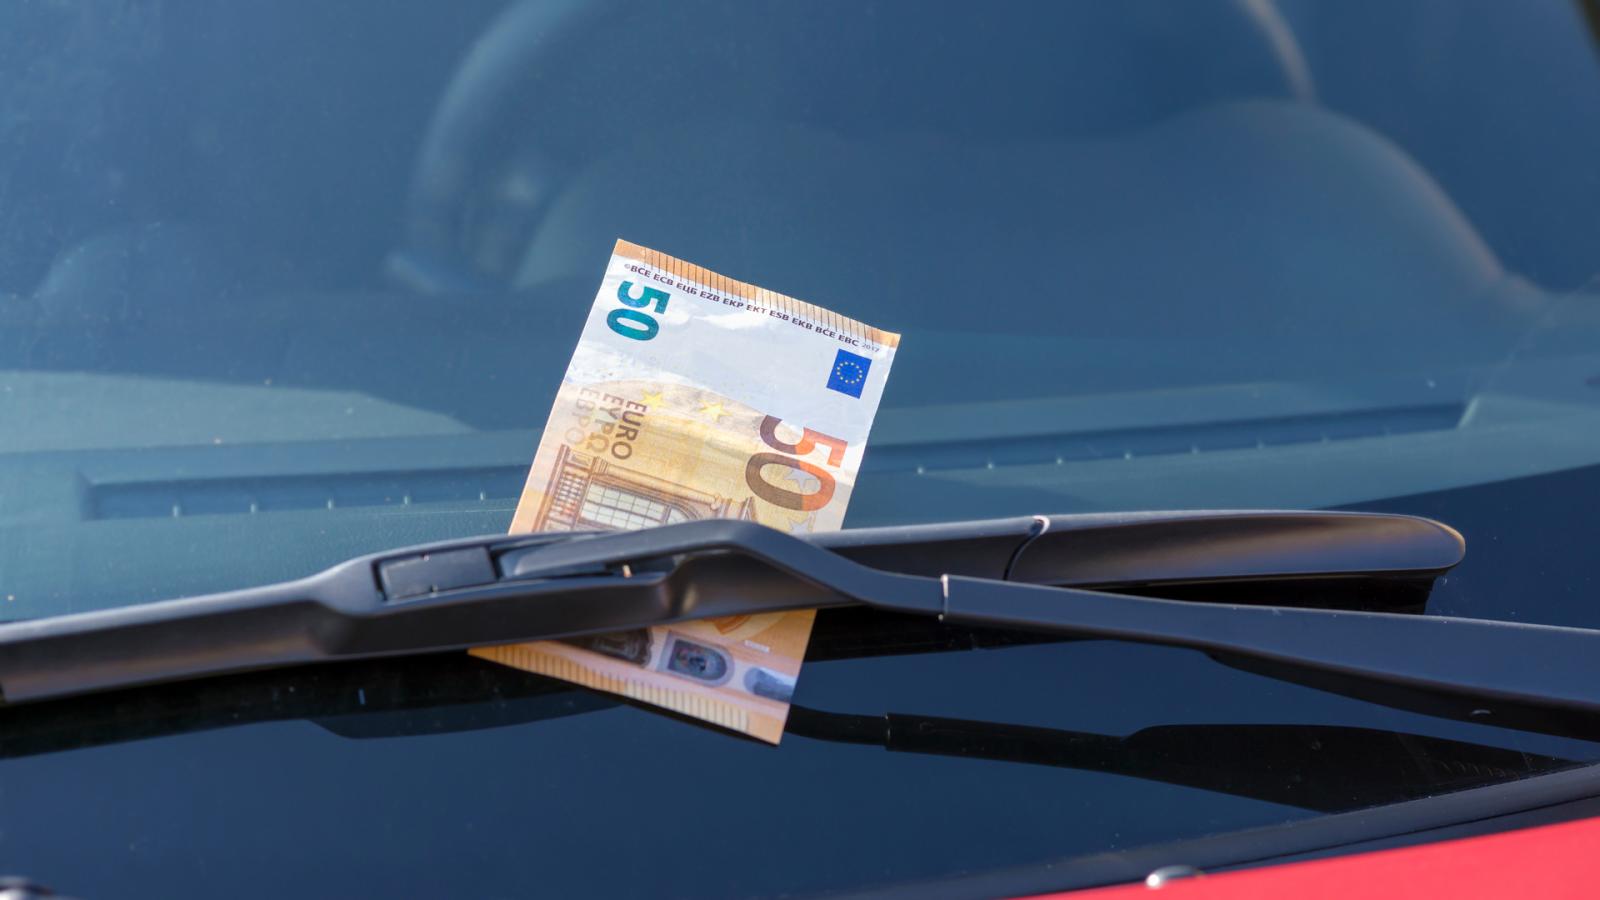 Προσοχή! Άγνωστοι αφήνουν 50 ευρώ στο παρμπρίζ του αυτοκινήτου -Γιατί δεν πρέπει να τα αγγίξεις